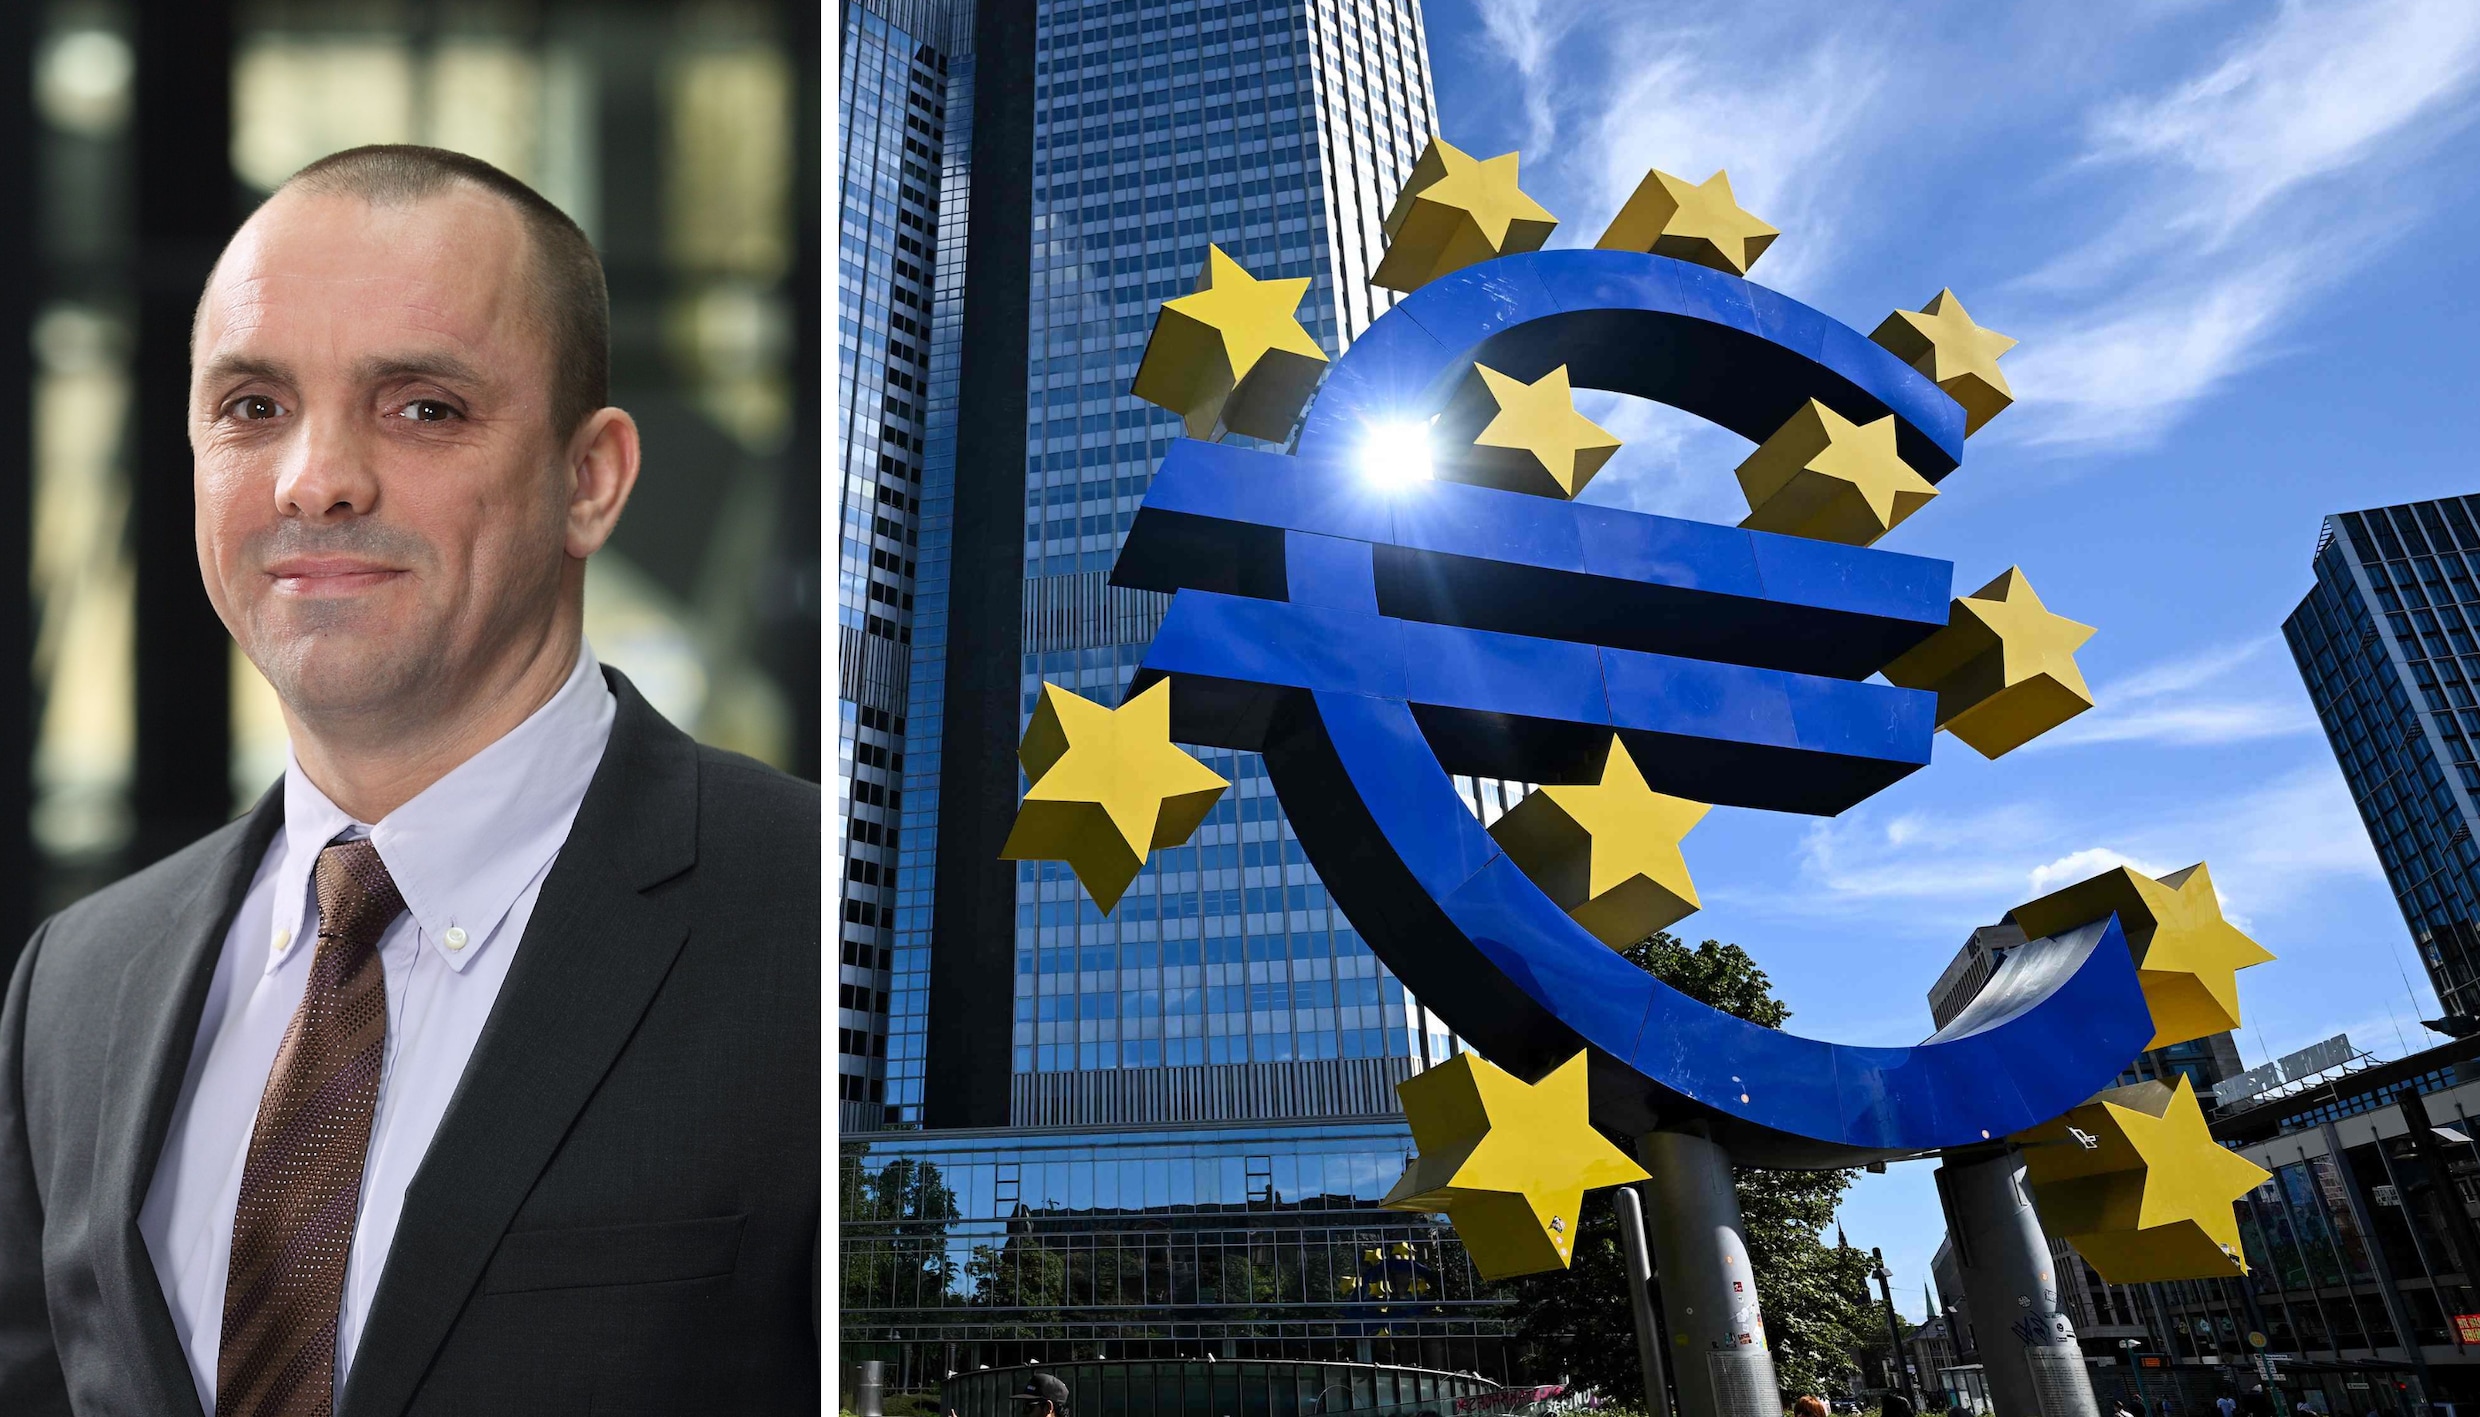 ‘Bepaalde trends zullen het leven duurder maken’: econoom Koen De Leus over rentestijging ECB